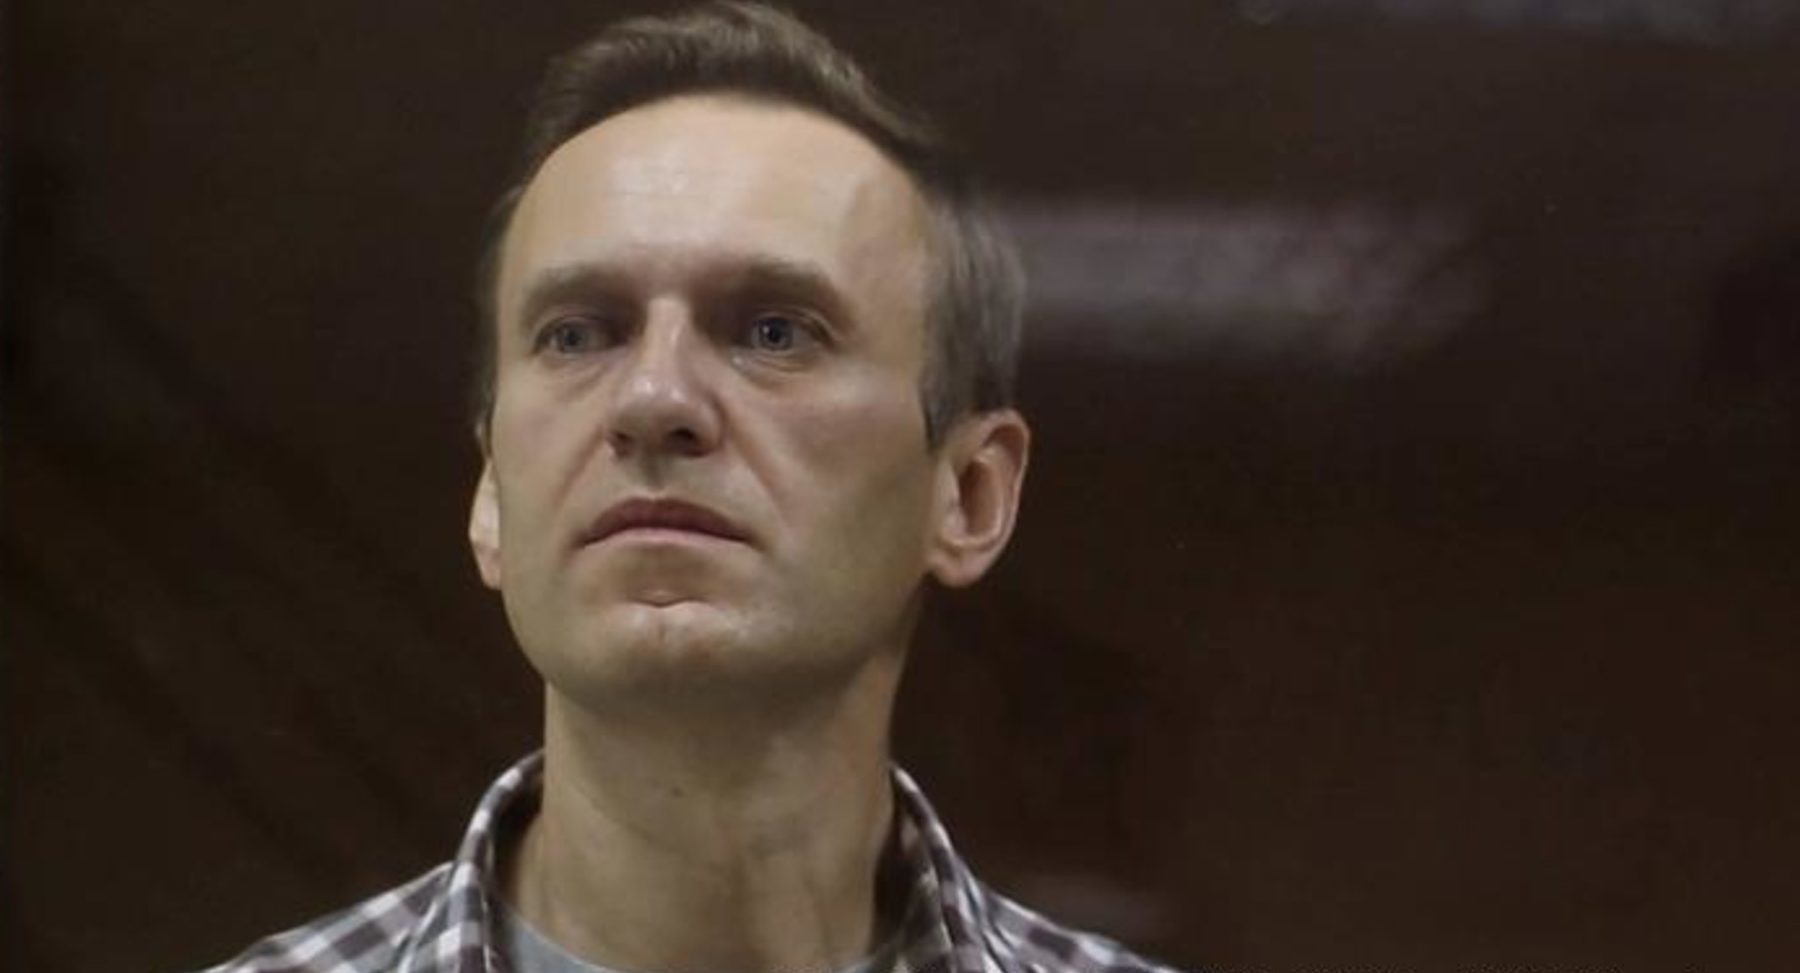 Якщо не почати лікувати, то він помре протягом найближчих днів — лікар про стан Навального